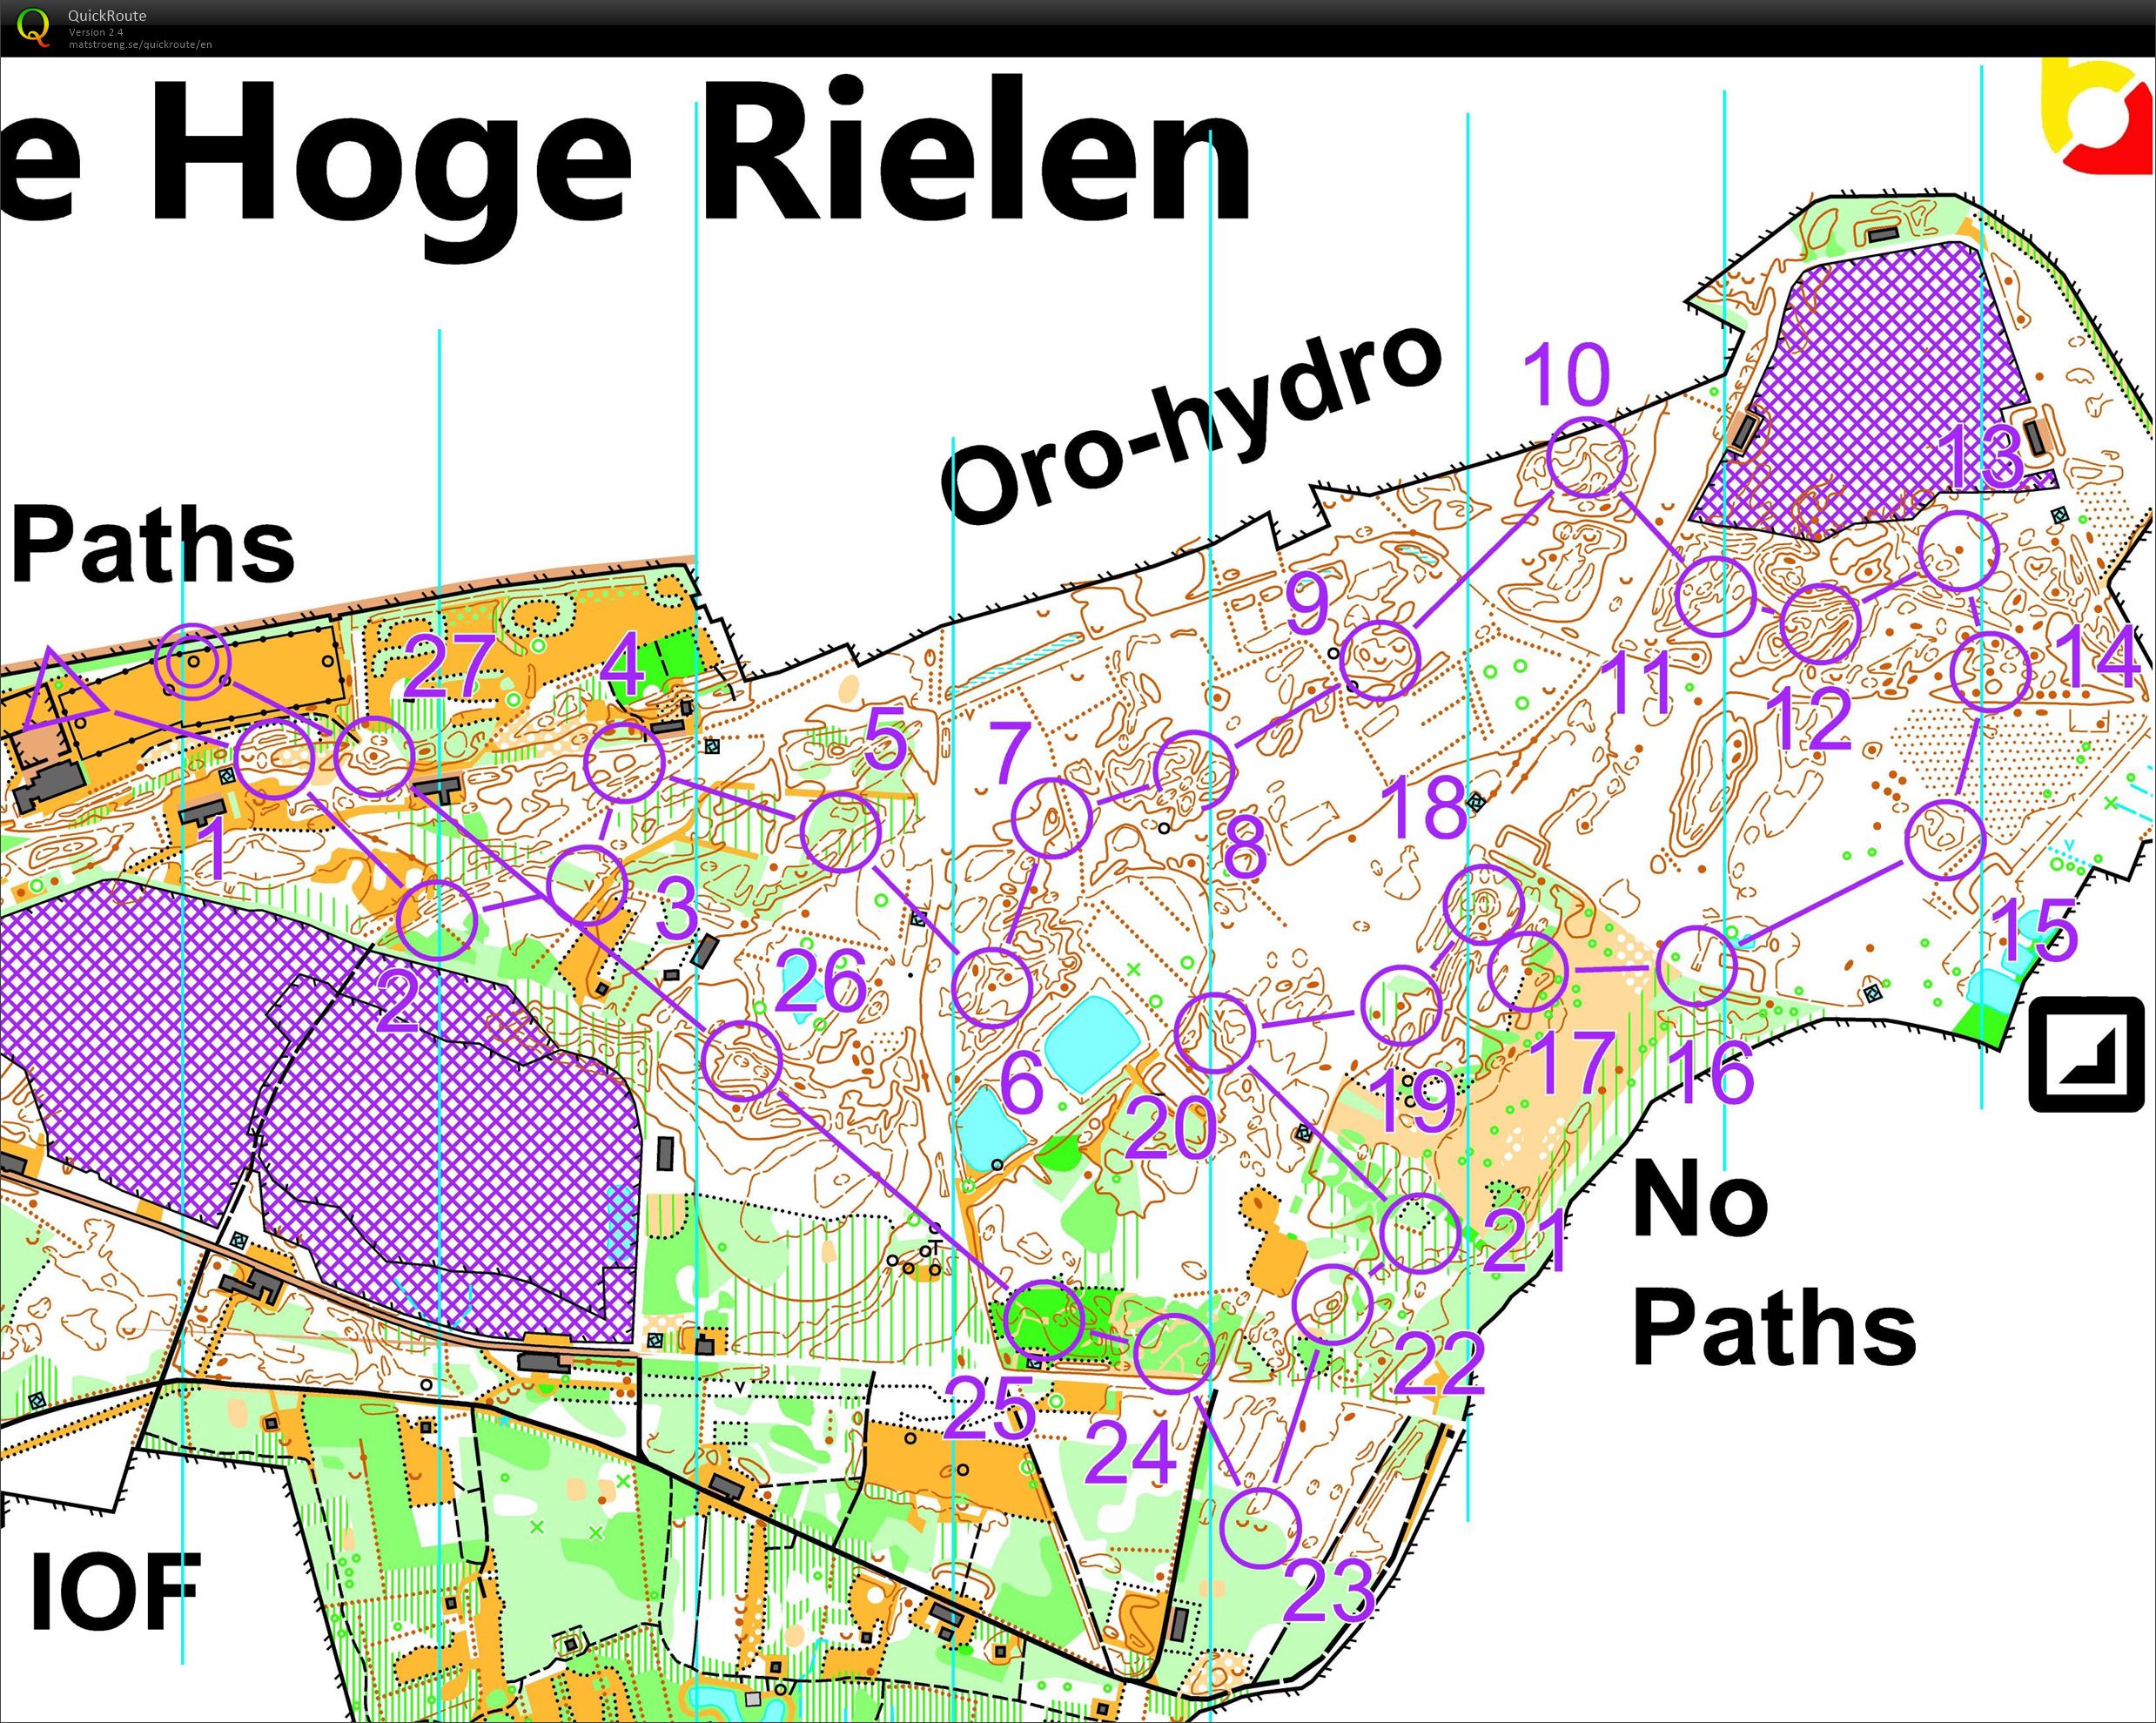 Hoge Rielen - take two (10/07/2022)